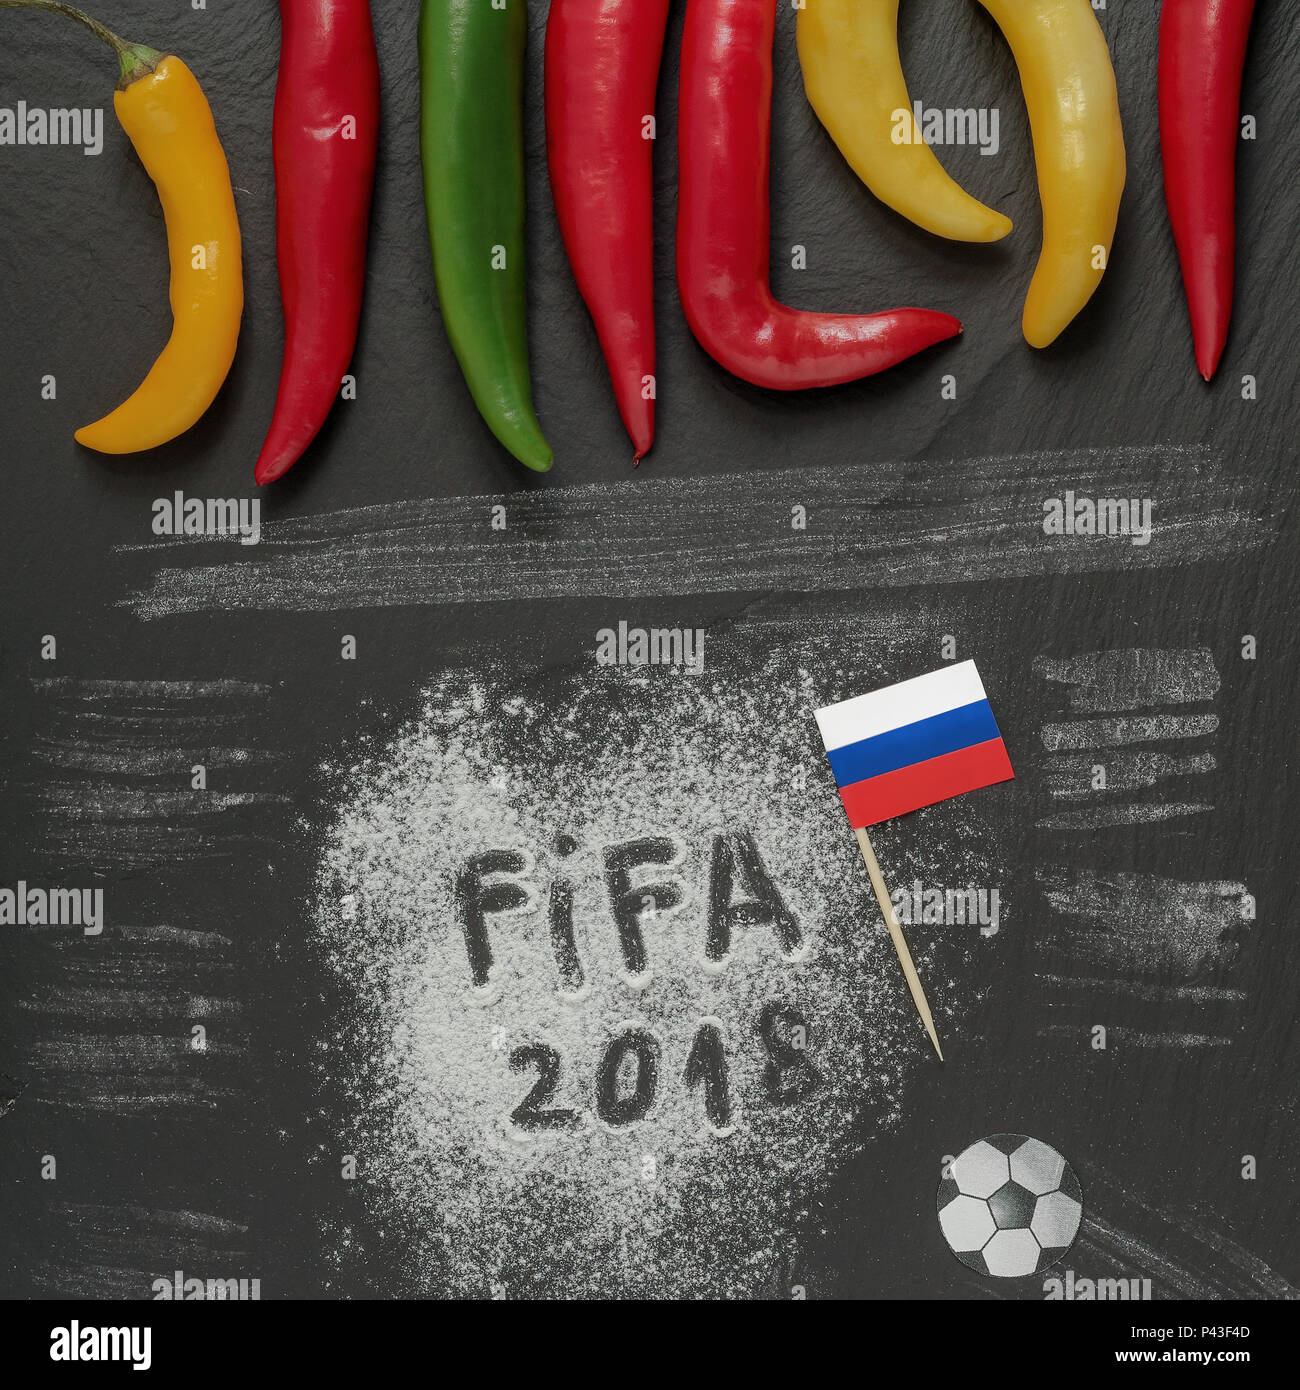 Coupe du monde Fifa 2018 Russie,l'écriture de la farine avec du papier de bricolage,drapeau ballon de soccer et certains Hot Chili Peppers. Banque D'Images